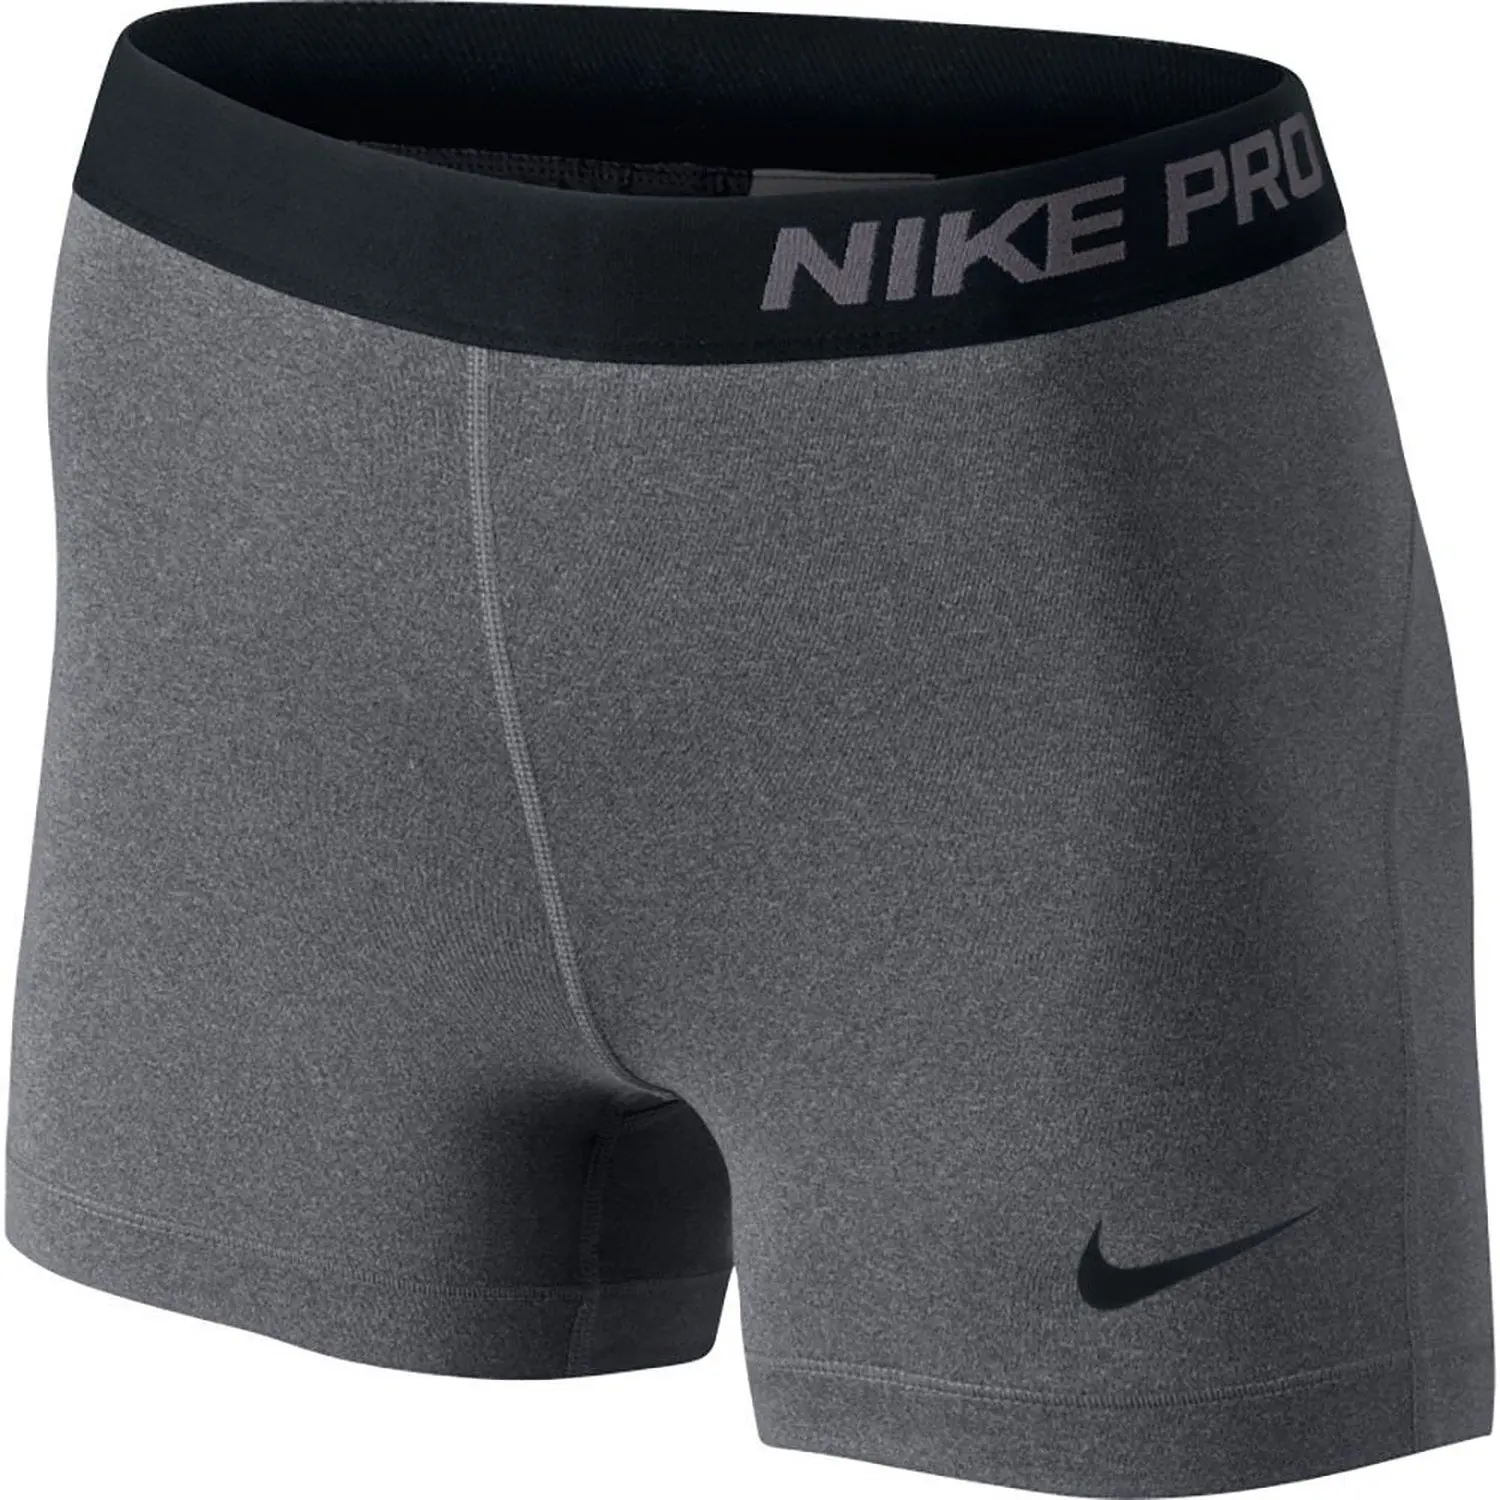 Nike Pro шорты. Велошорты мужские Nike Pro. 23 Nike Pro. Шорты Nike Pro женские. Шорты найк про